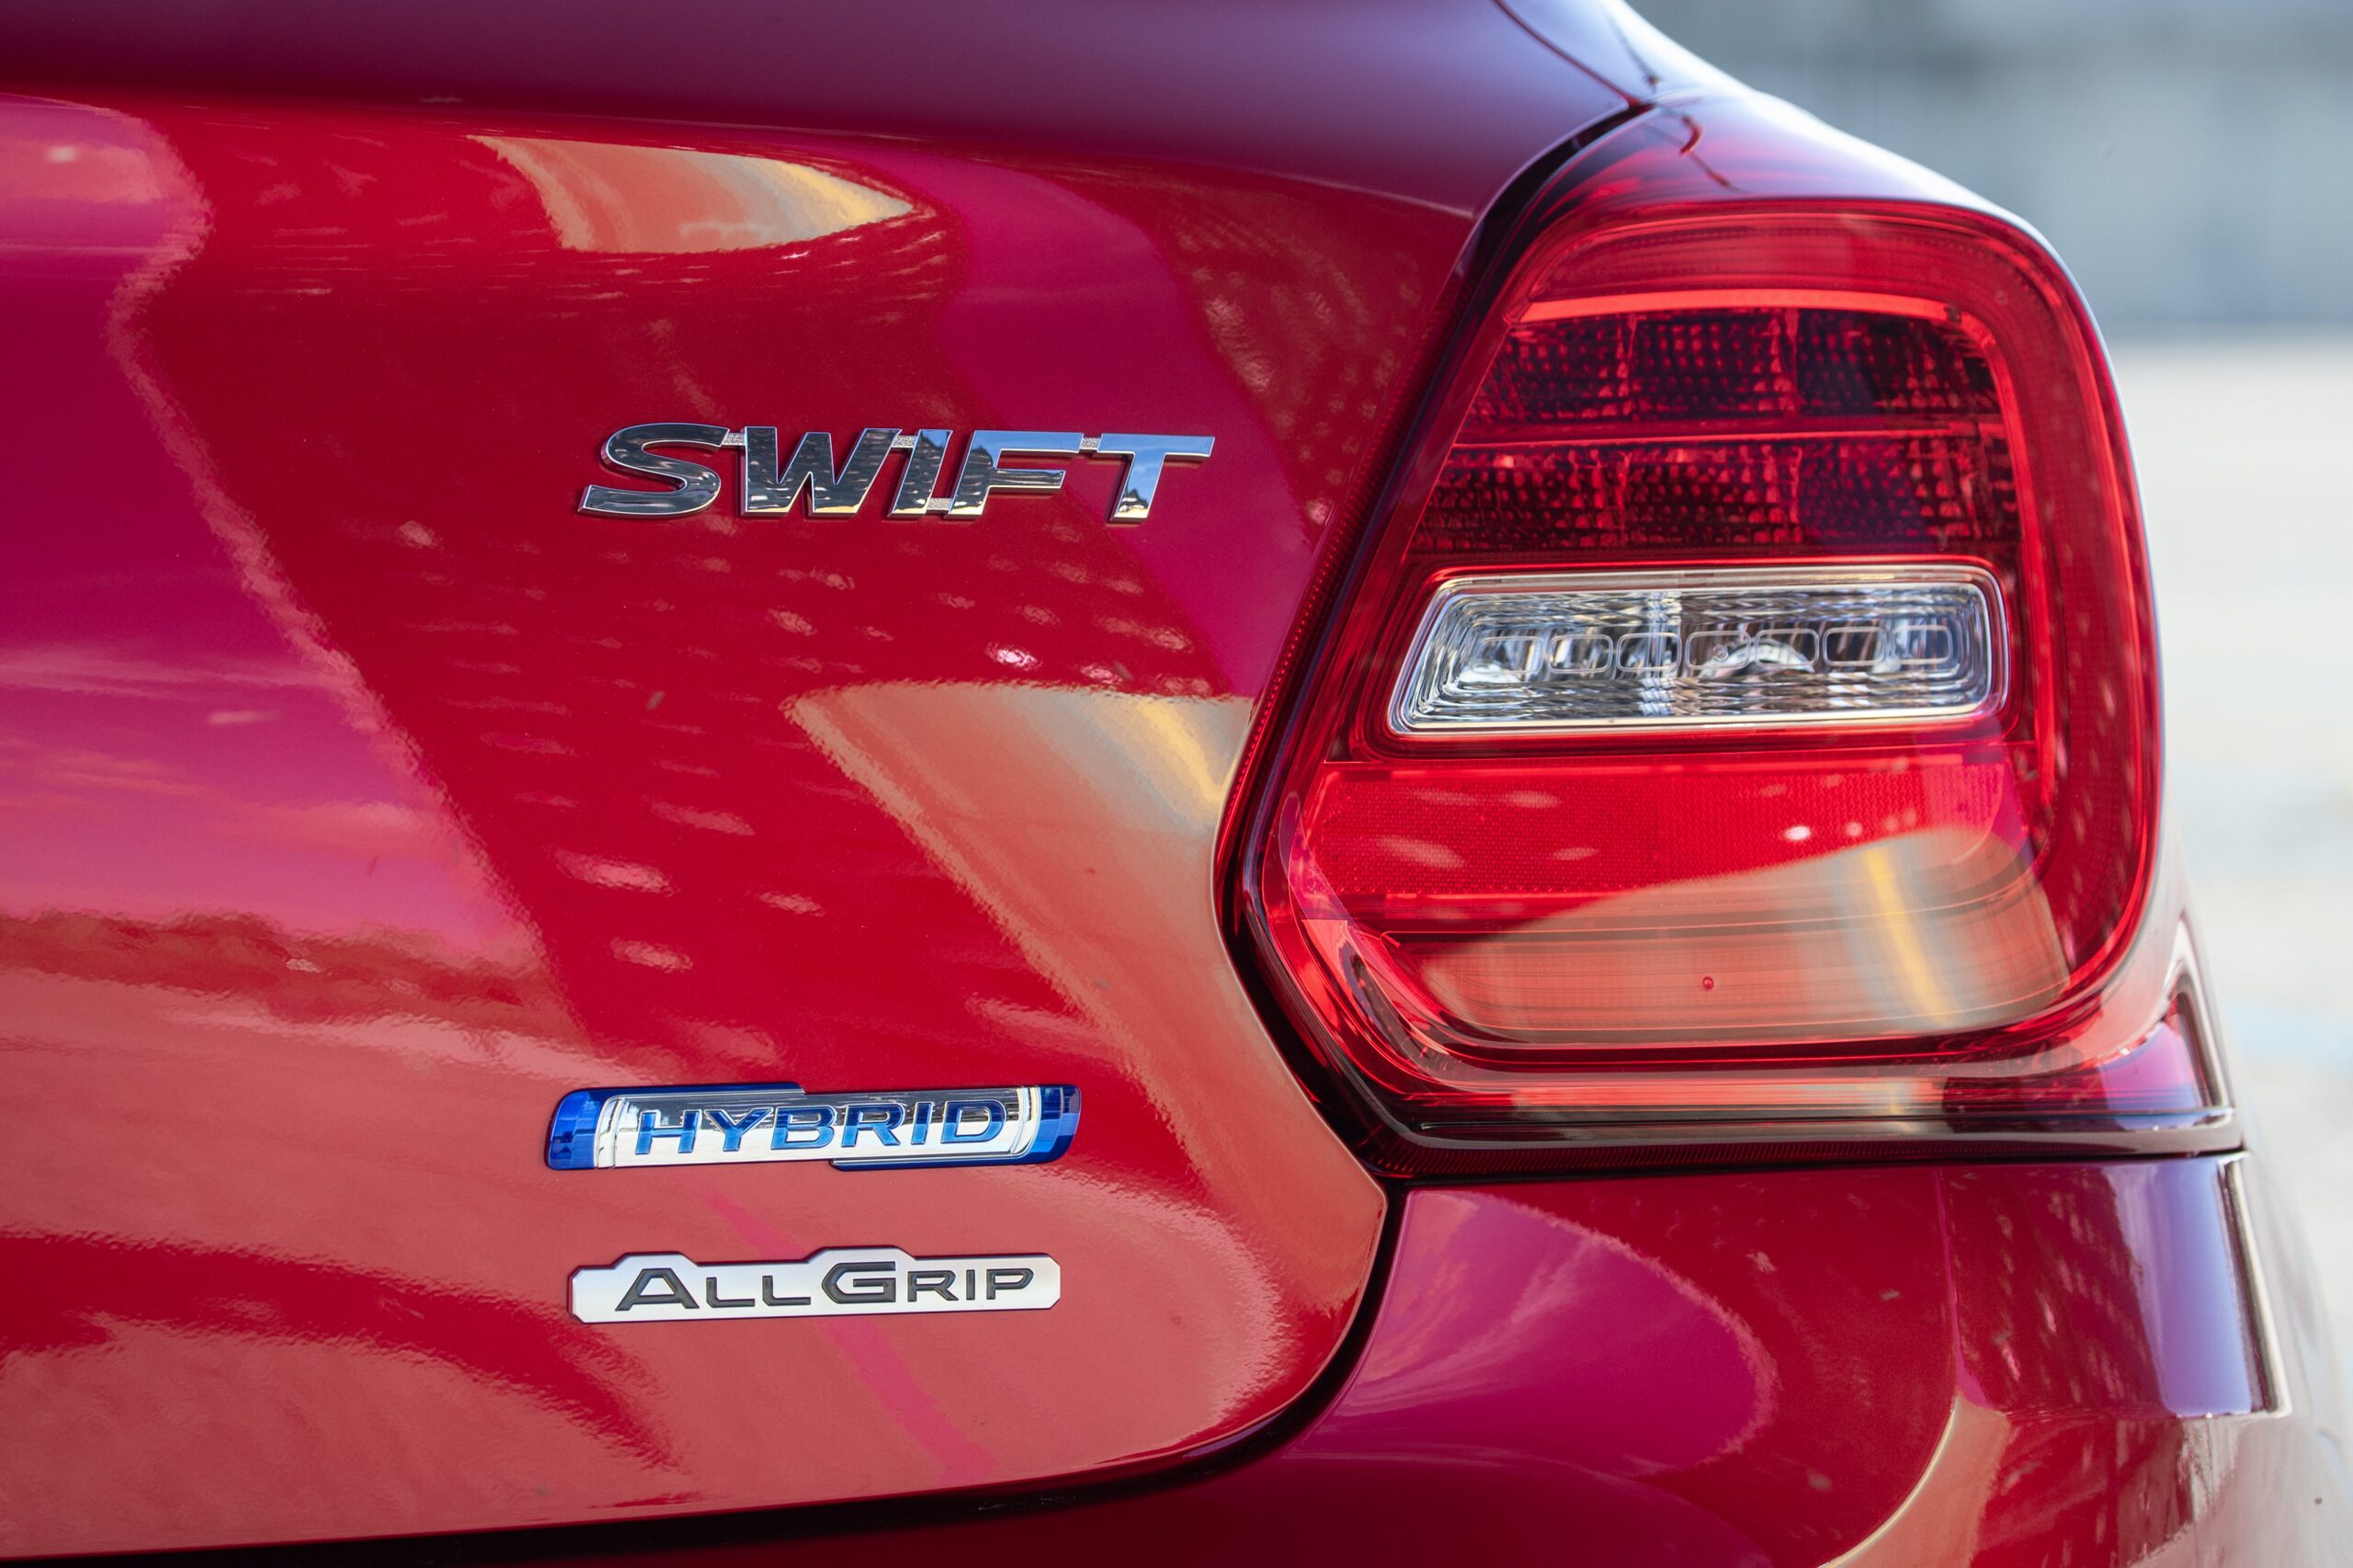 Suzuki Swift Hybrid badge